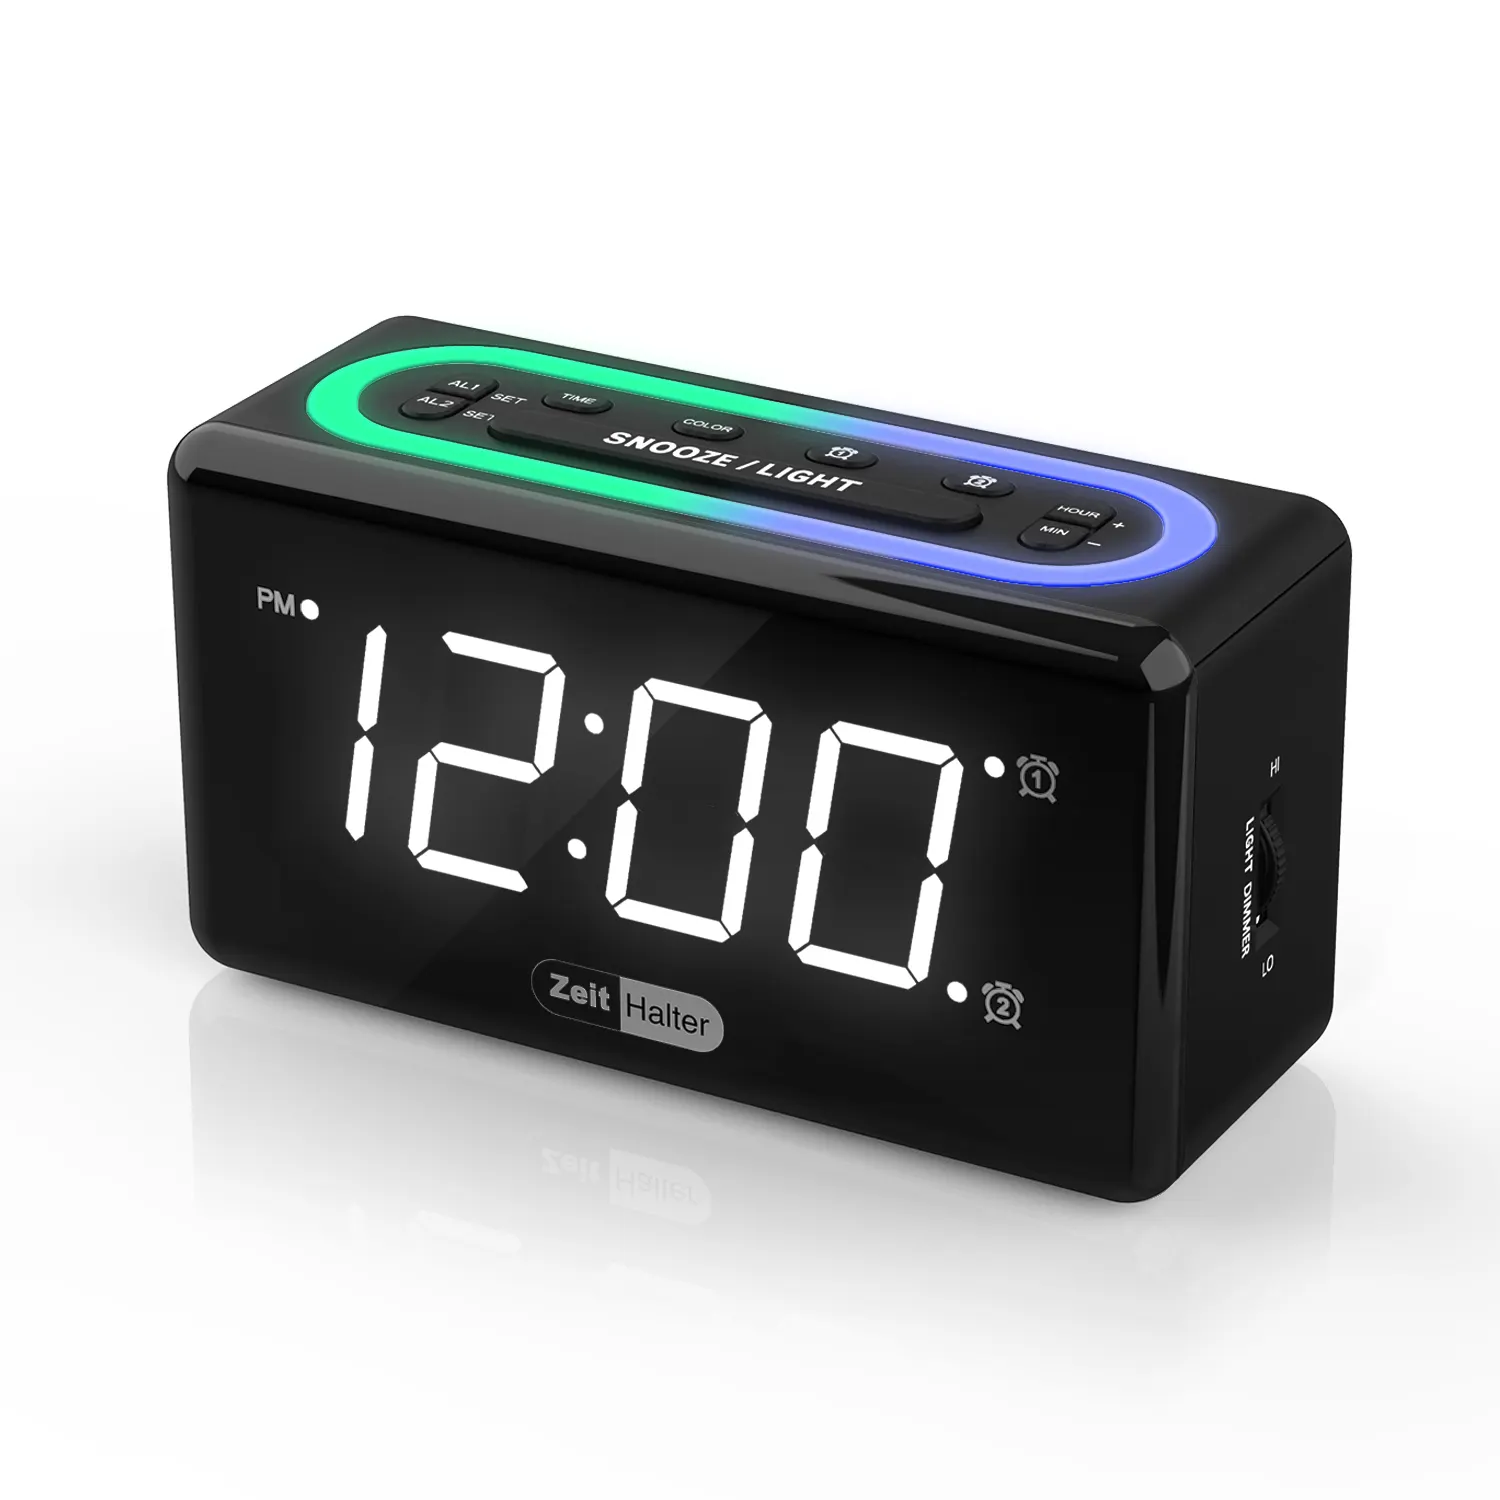 Digit Clock Led Display Bedside Alarm Clock Digital 2 Alarm Times Setting LED Display Dual Alarms 7-Color Night Light Snooze Adjustable Dimm